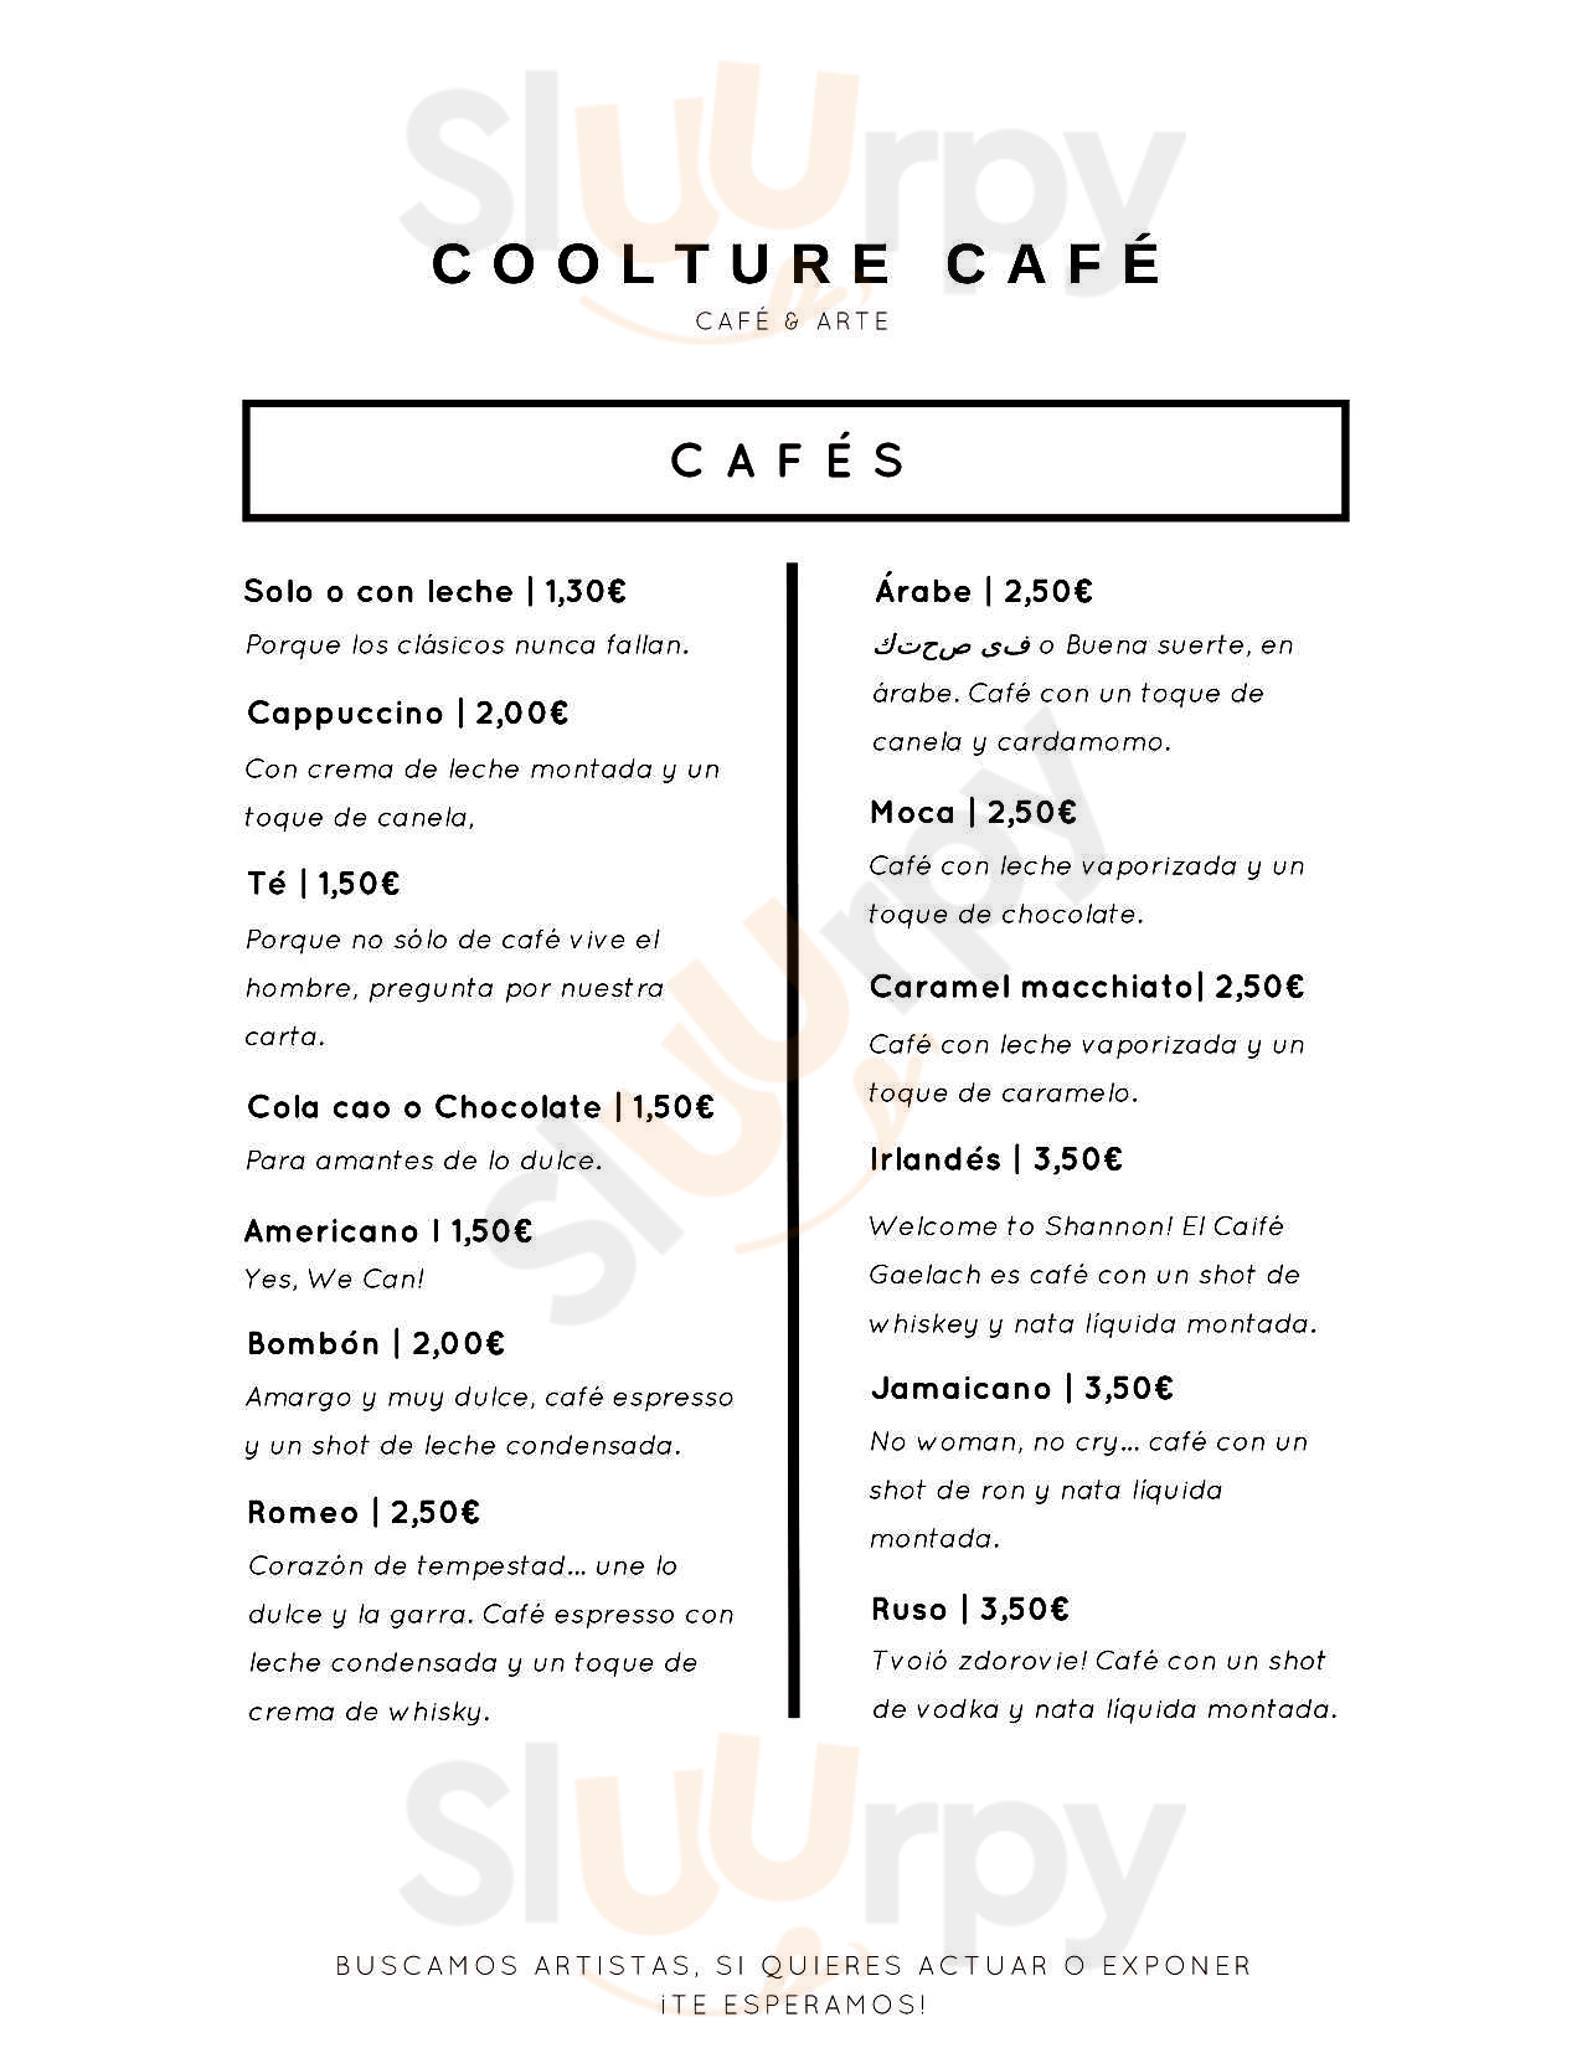 Coolture Cafe Vaciamadrid Menu - 1